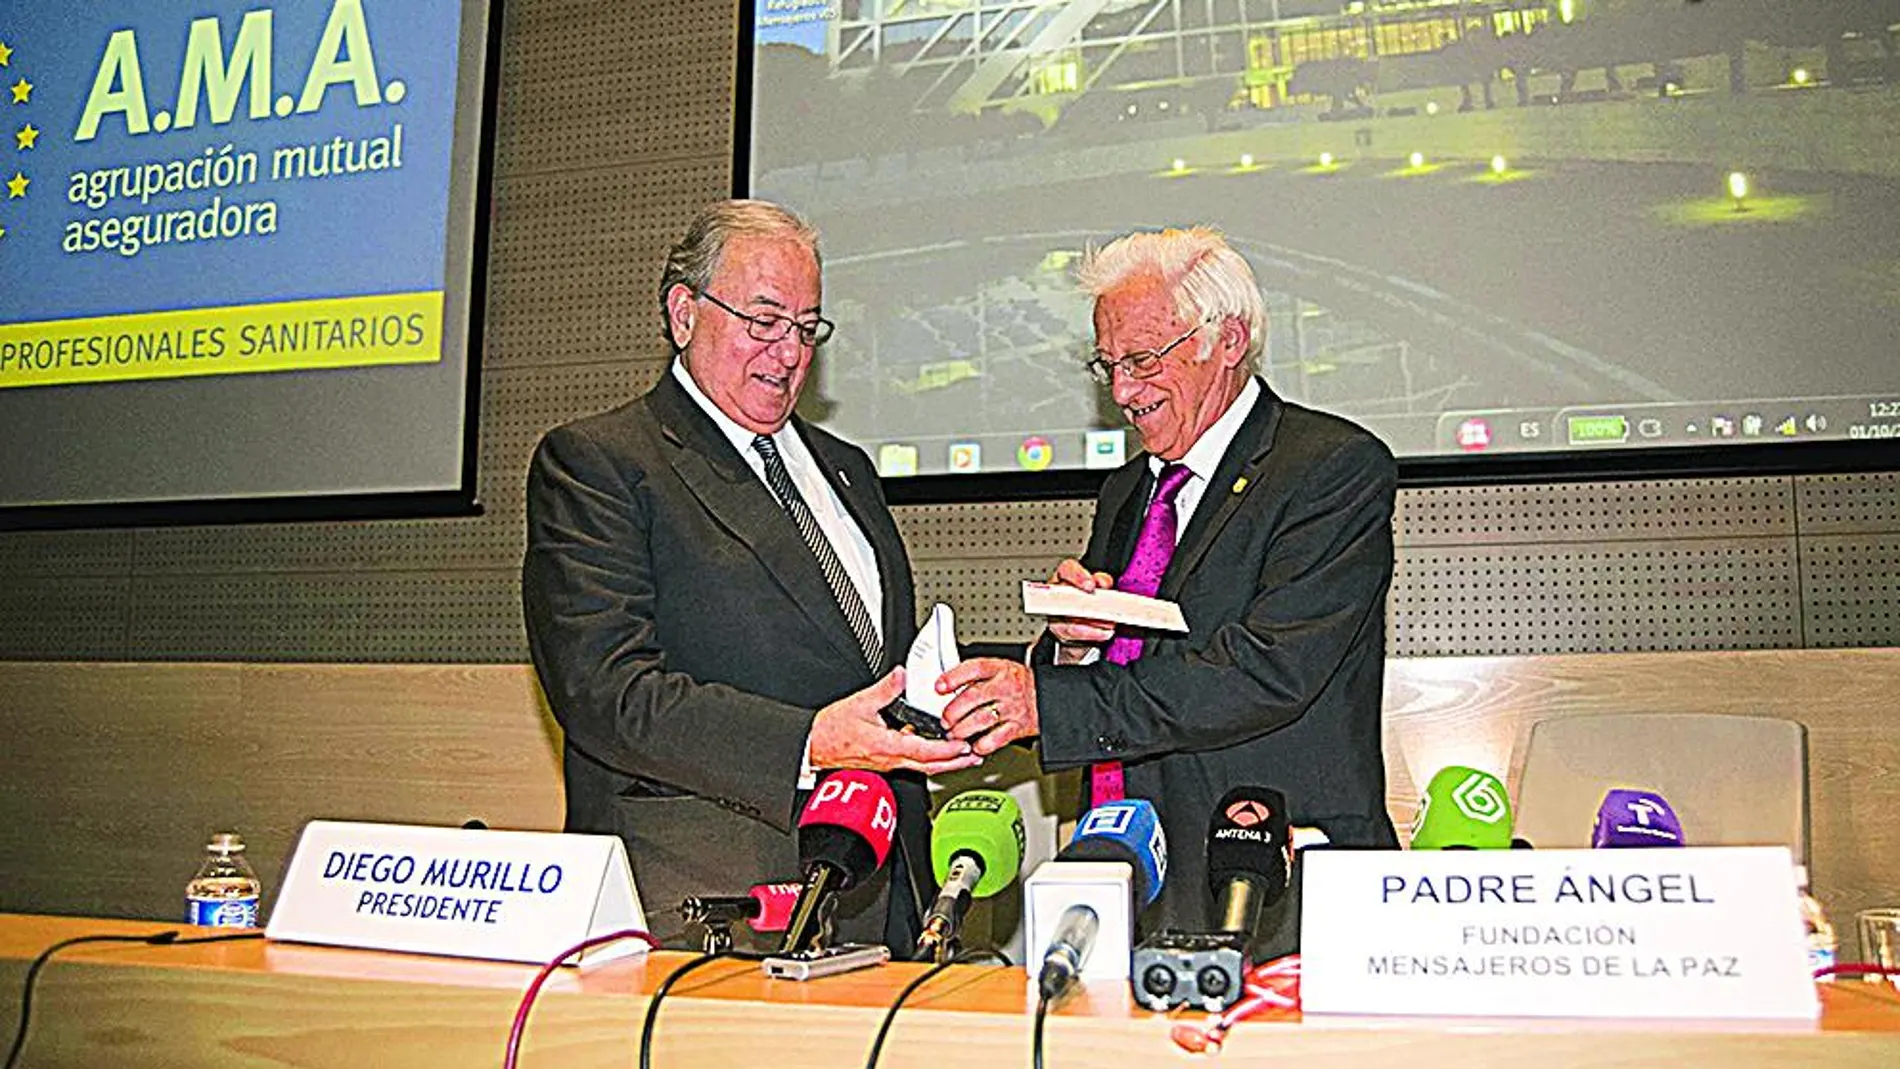 Diego Murillo, presidente de AMA, entregó el cheque al Padre Ángel